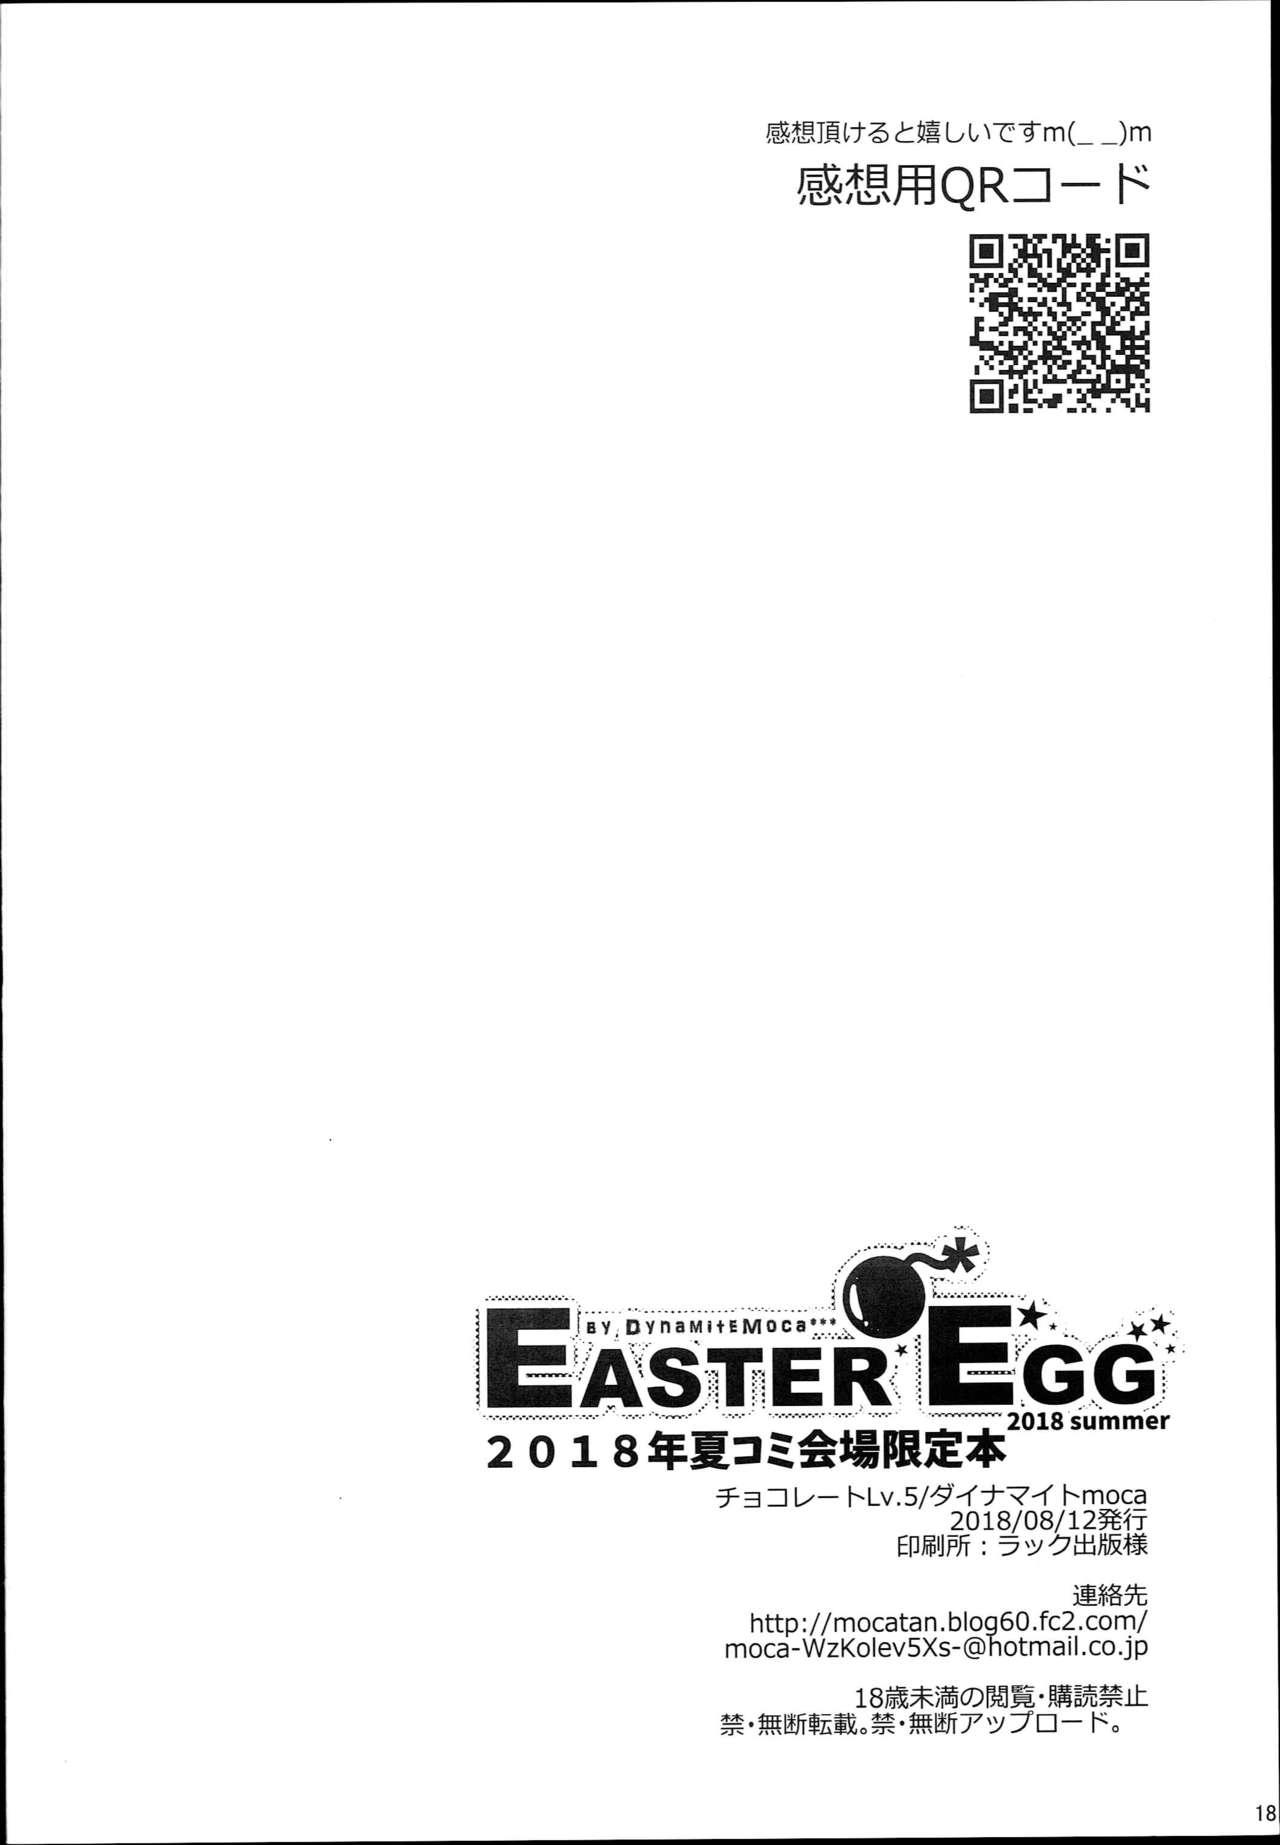 Easter Egg 17